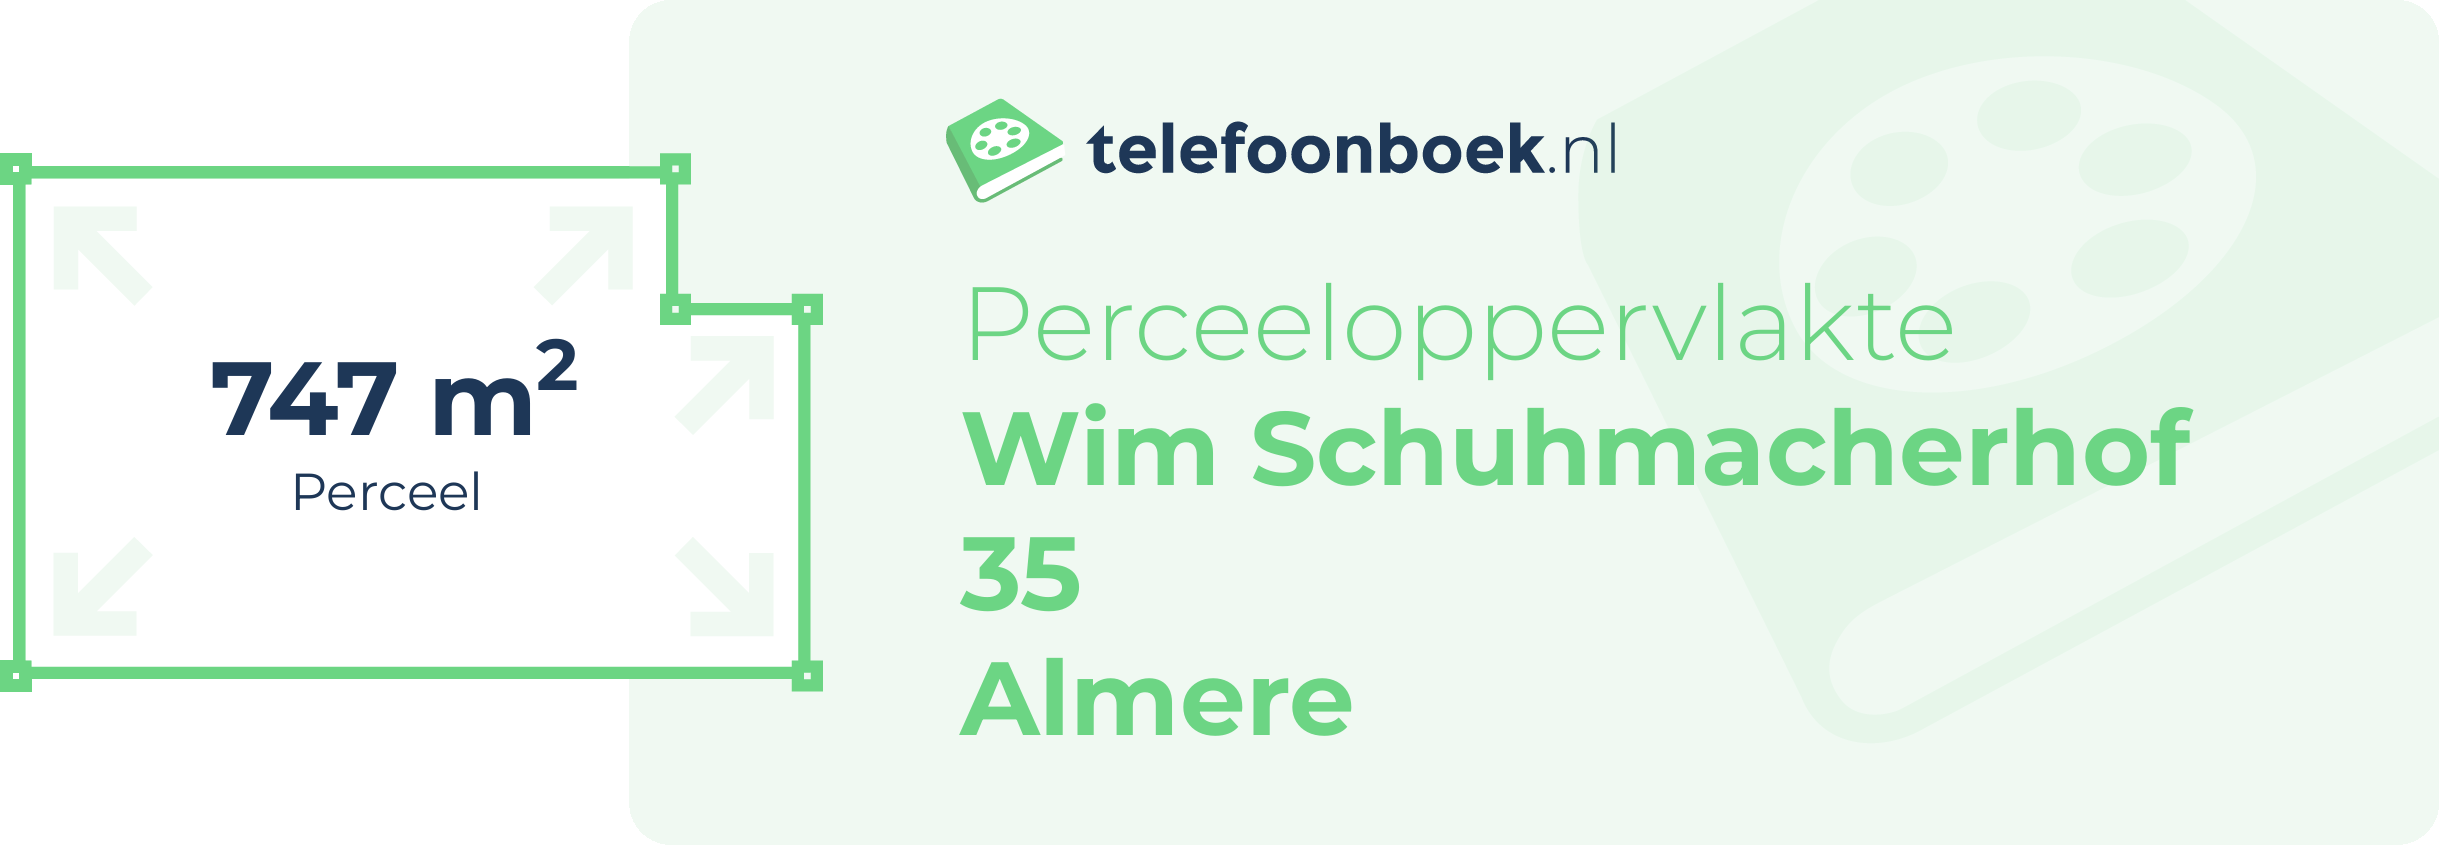 Perceeloppervlakte Wim Schuhmacherhof 35 Almere